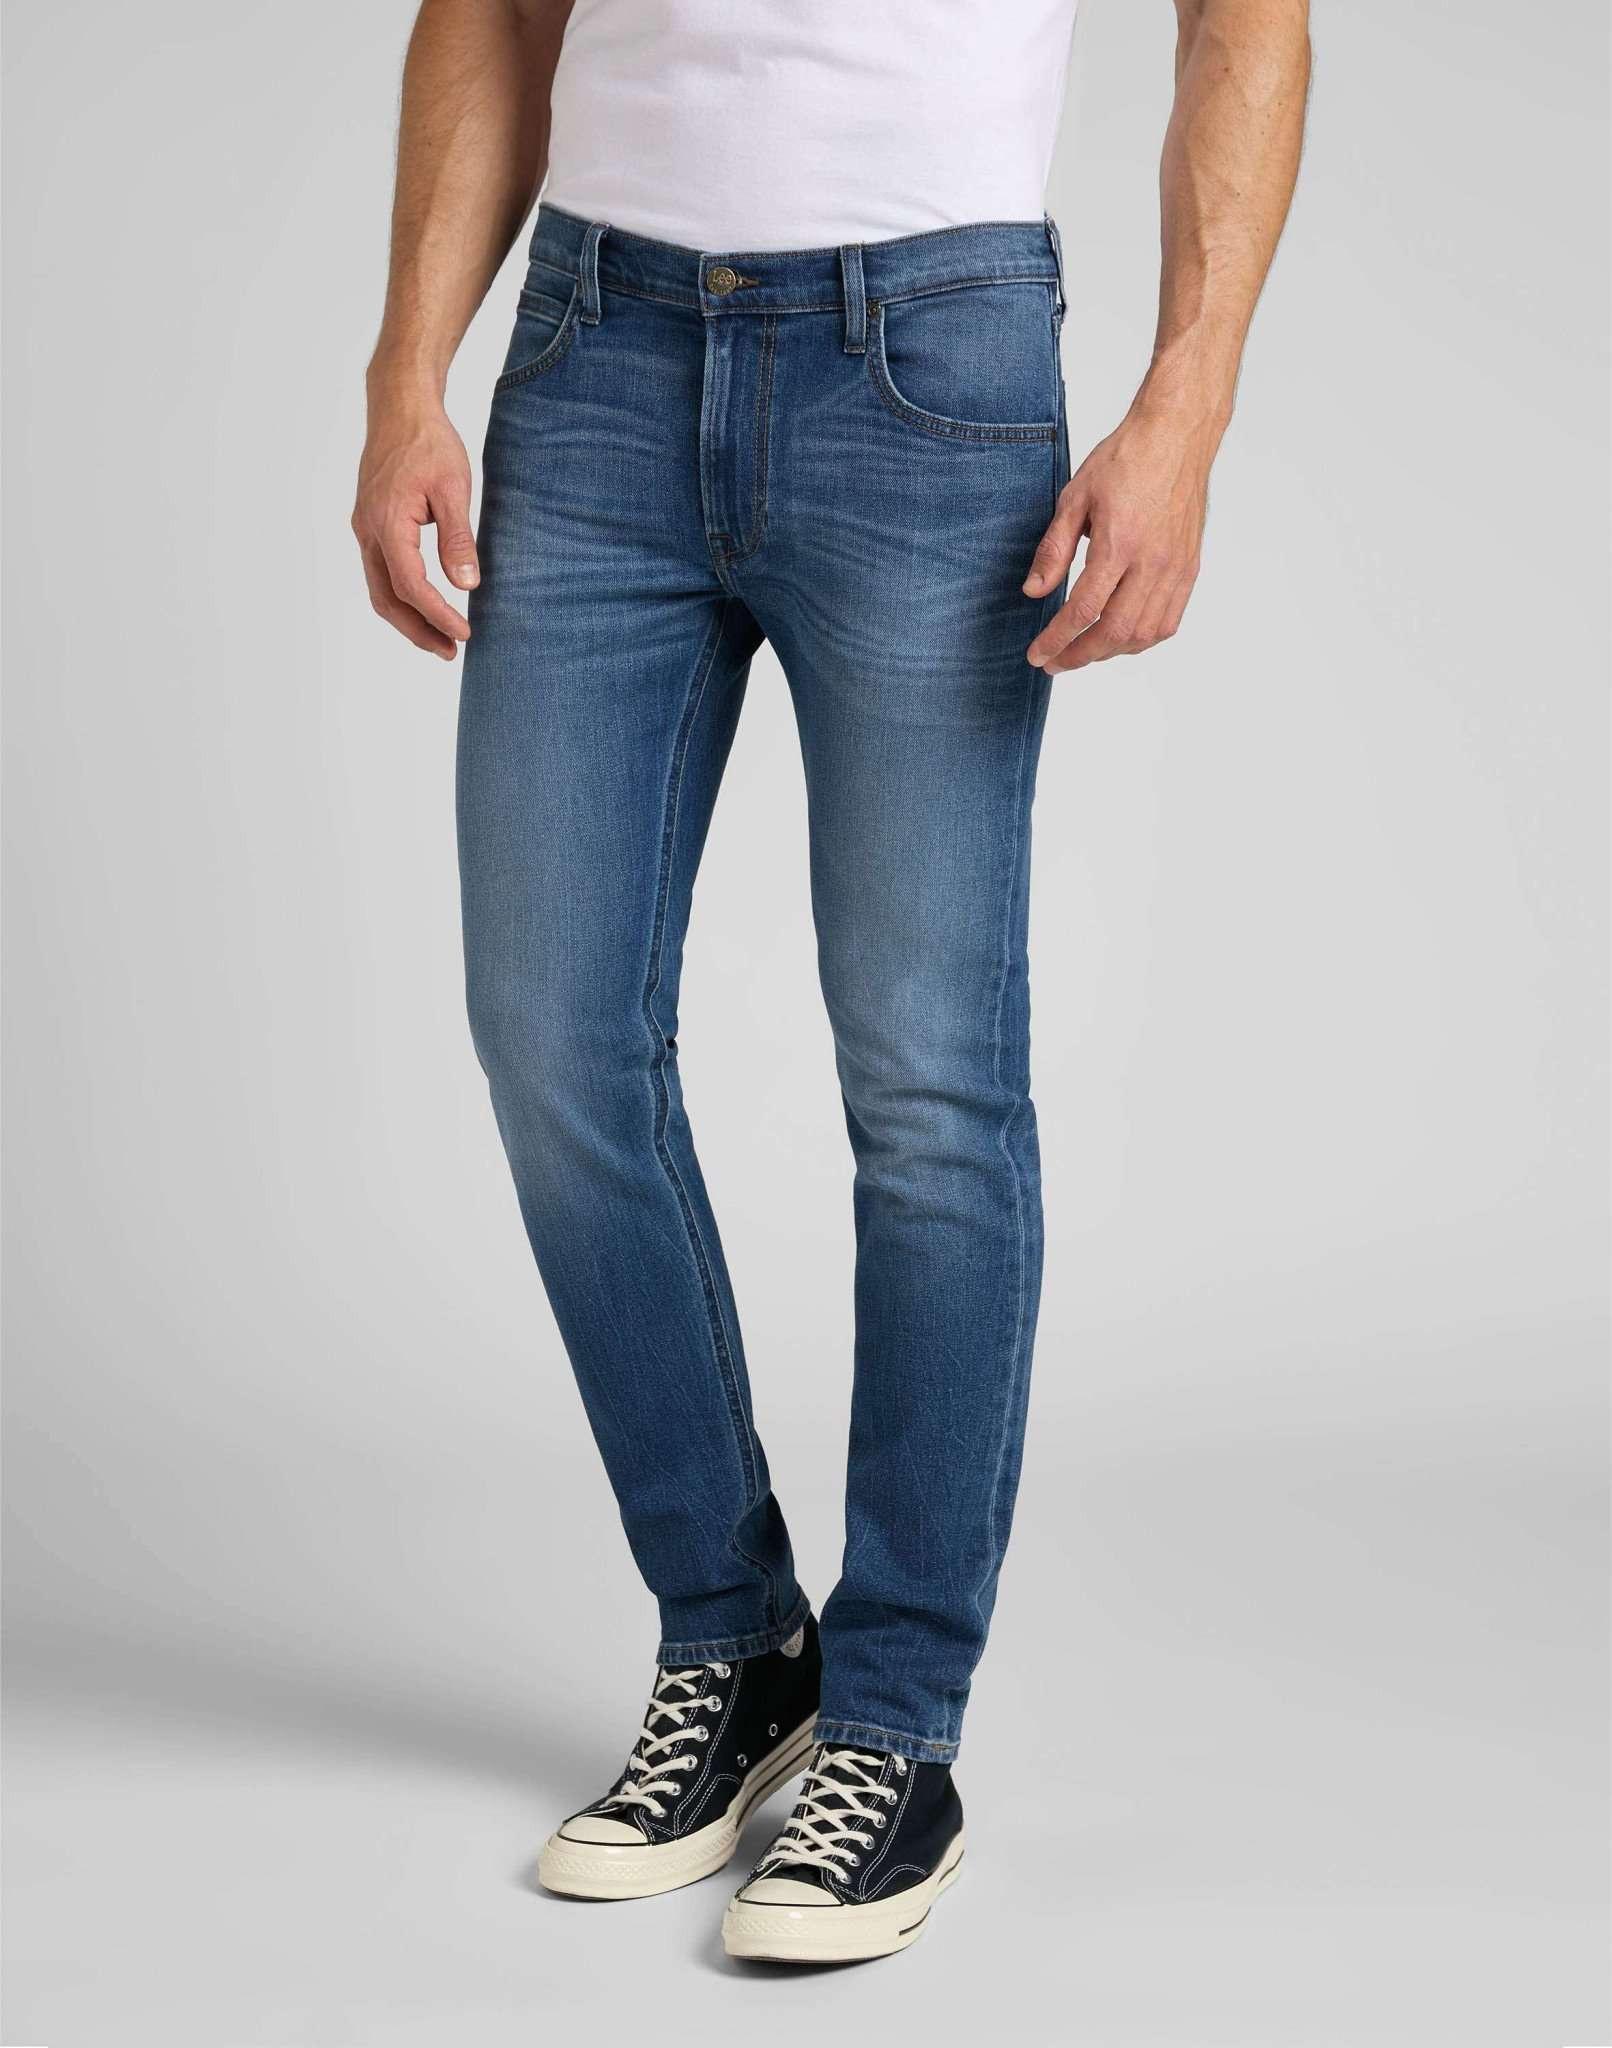 Jeans Slim Fit Luke Herren Blau Denim L32/W29 von Lee